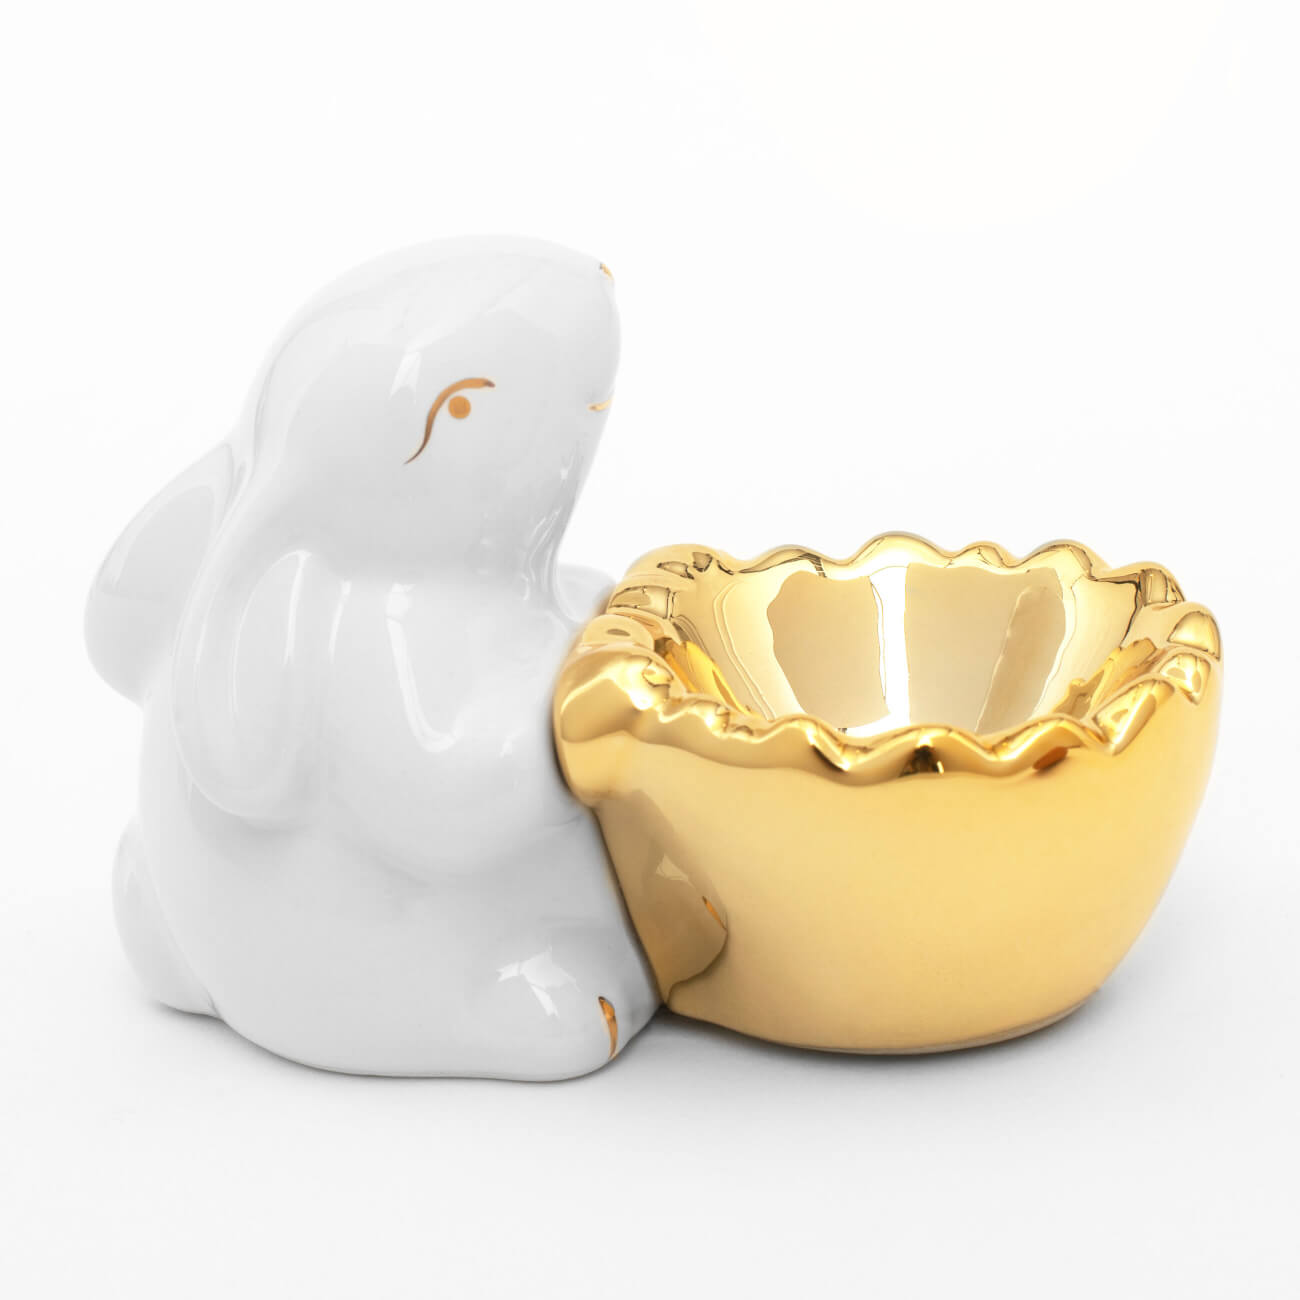 подставка для яйца 11 см керамика бело золотистая кролик со скорлупой easter gold Подставка для яйца, 11 см, керамика, бело-золотистая, Кролик со скорлупой, Easter gold